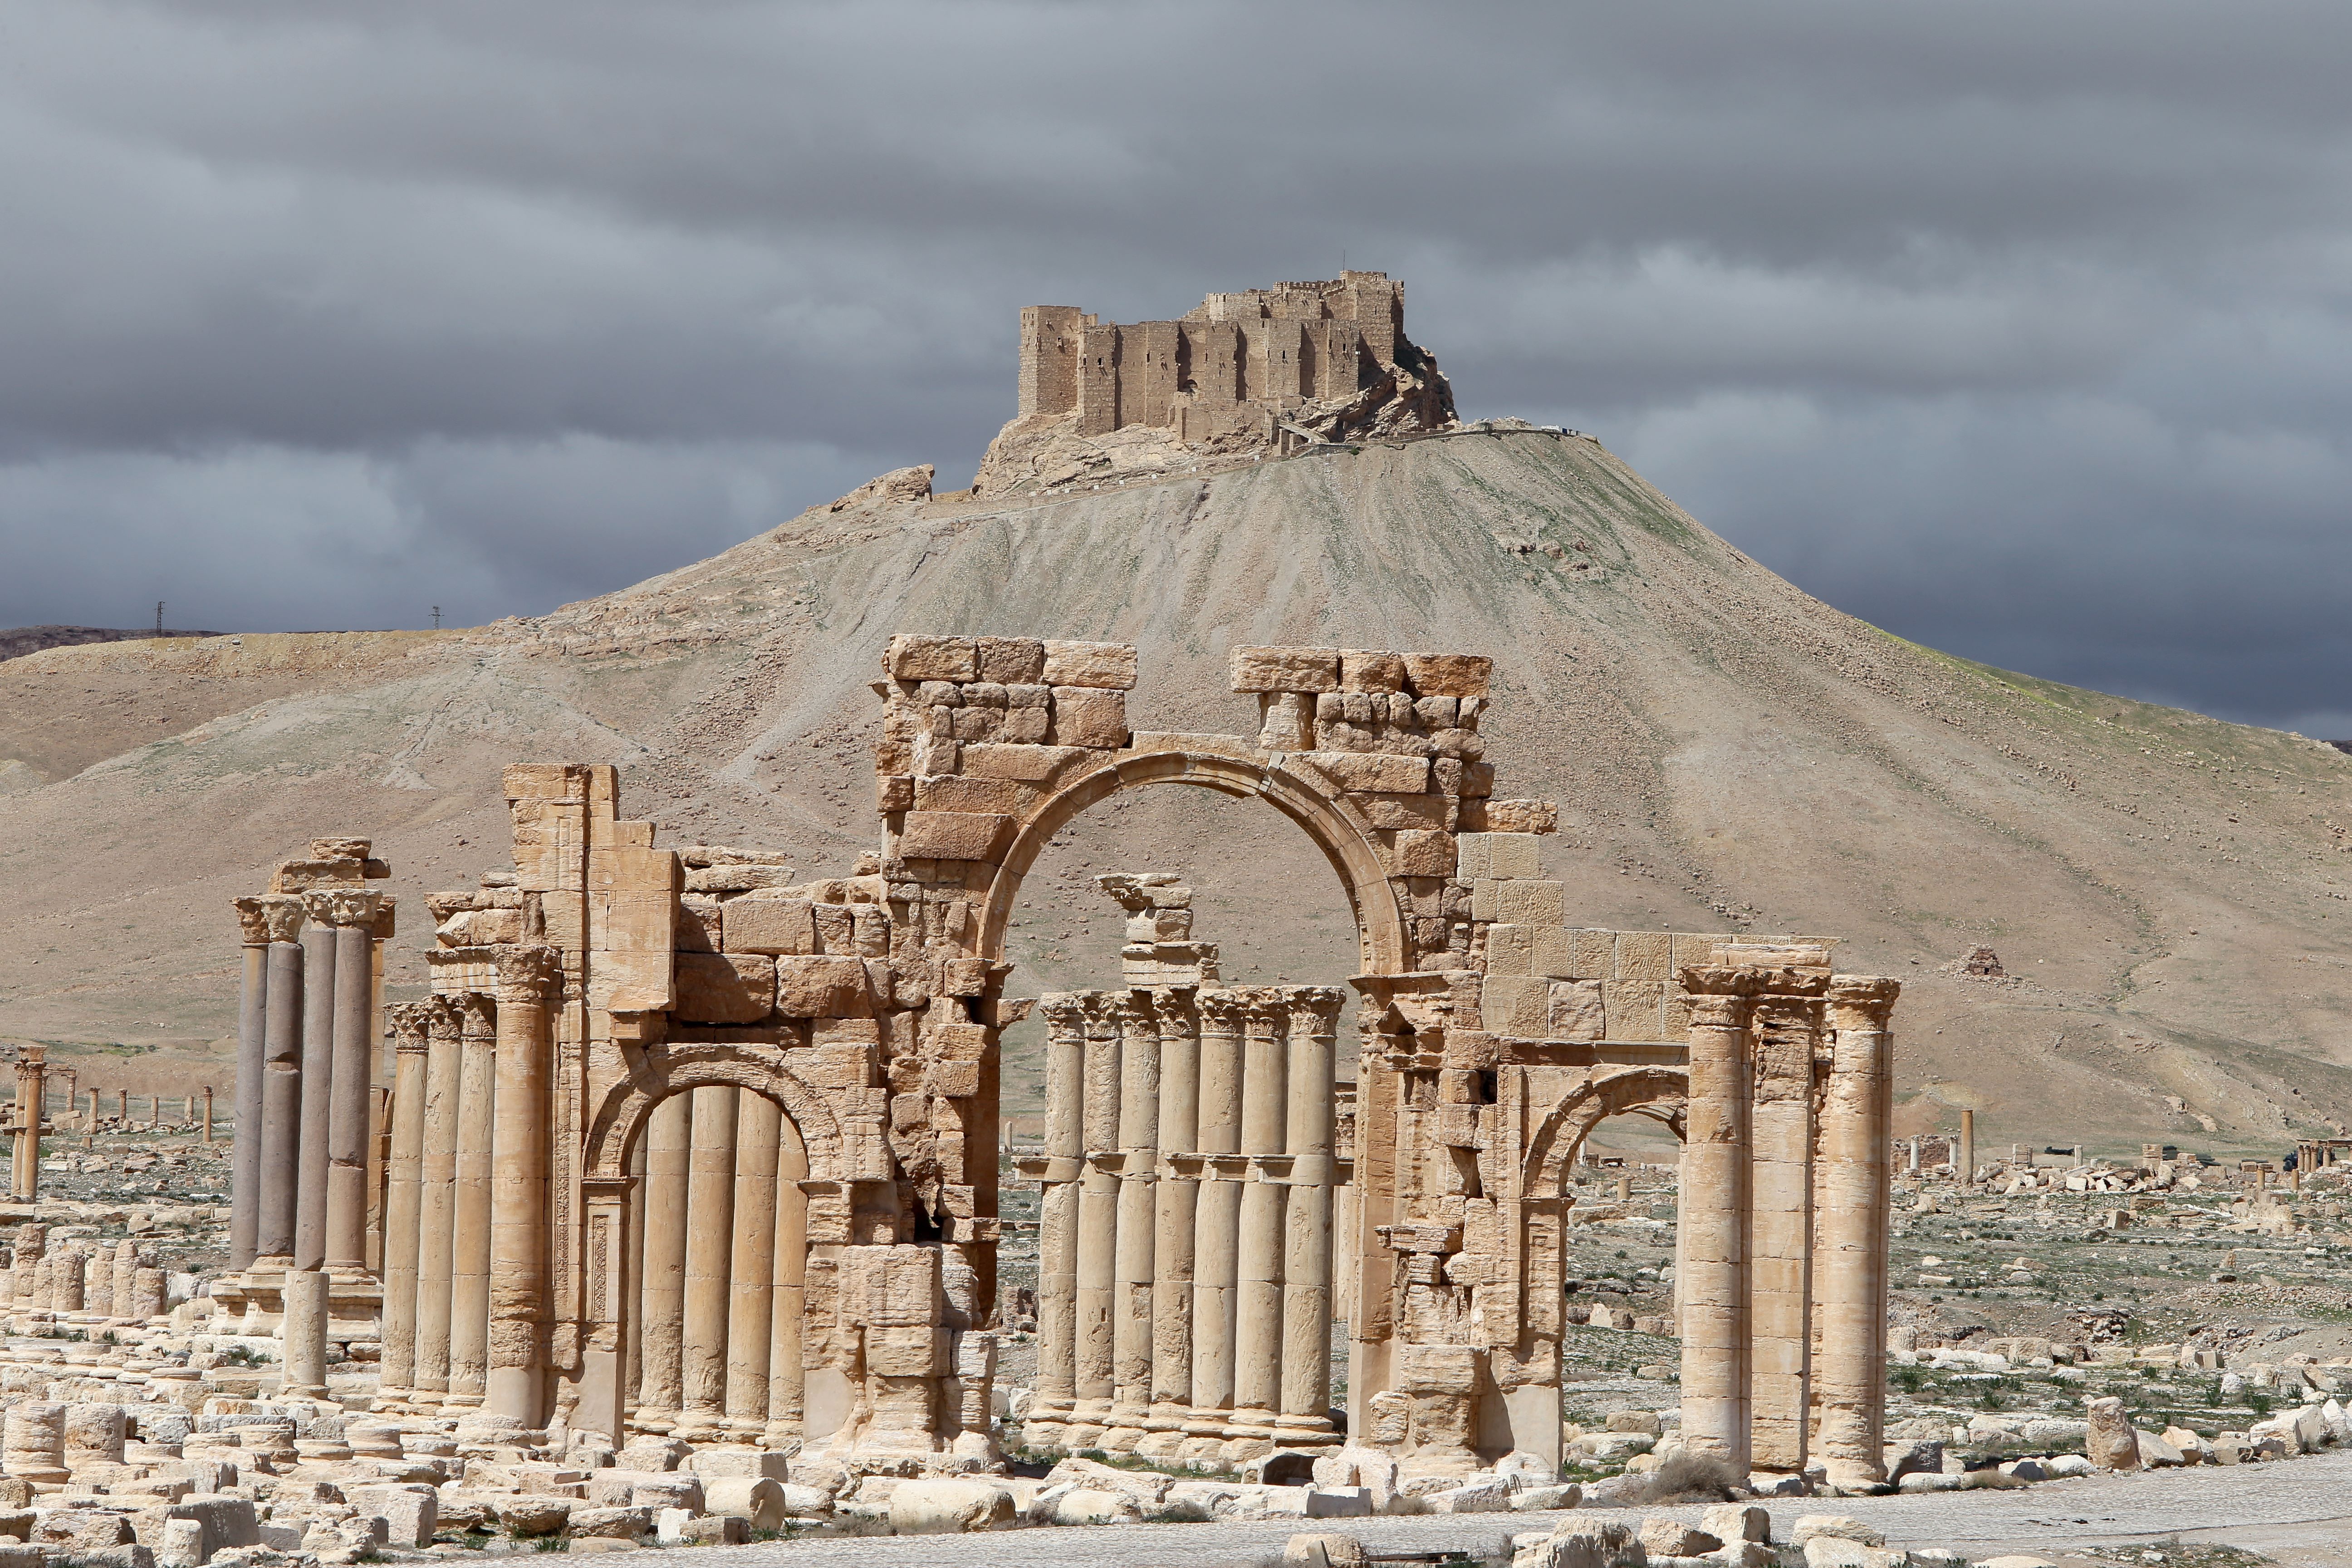 تنظيم  داعش  يعدم عالم آثار سورياً في تدمر - CNNArabic.com